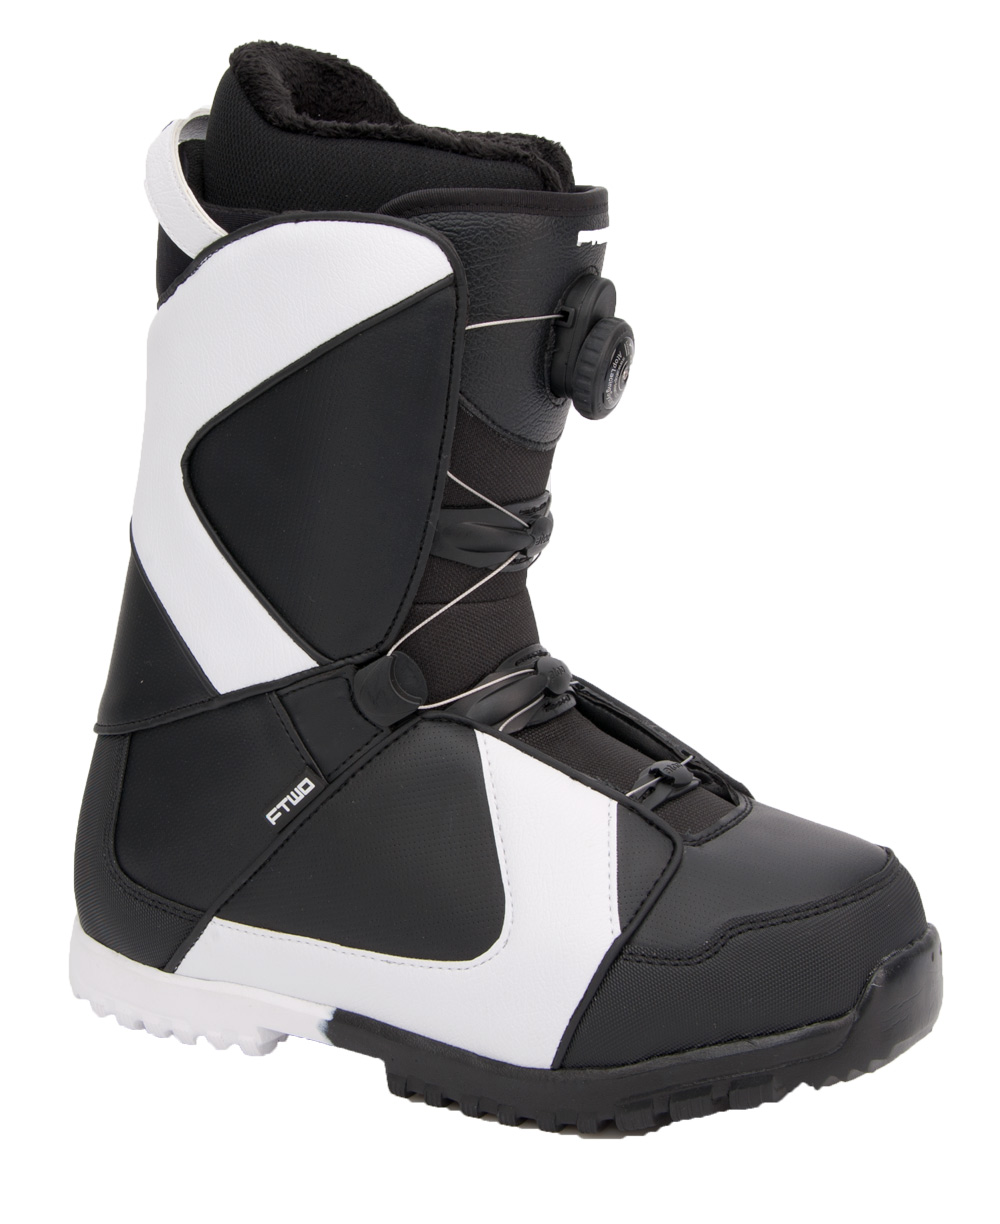 Ботинки сноубордические F2 Air размер 29,5 black/black 